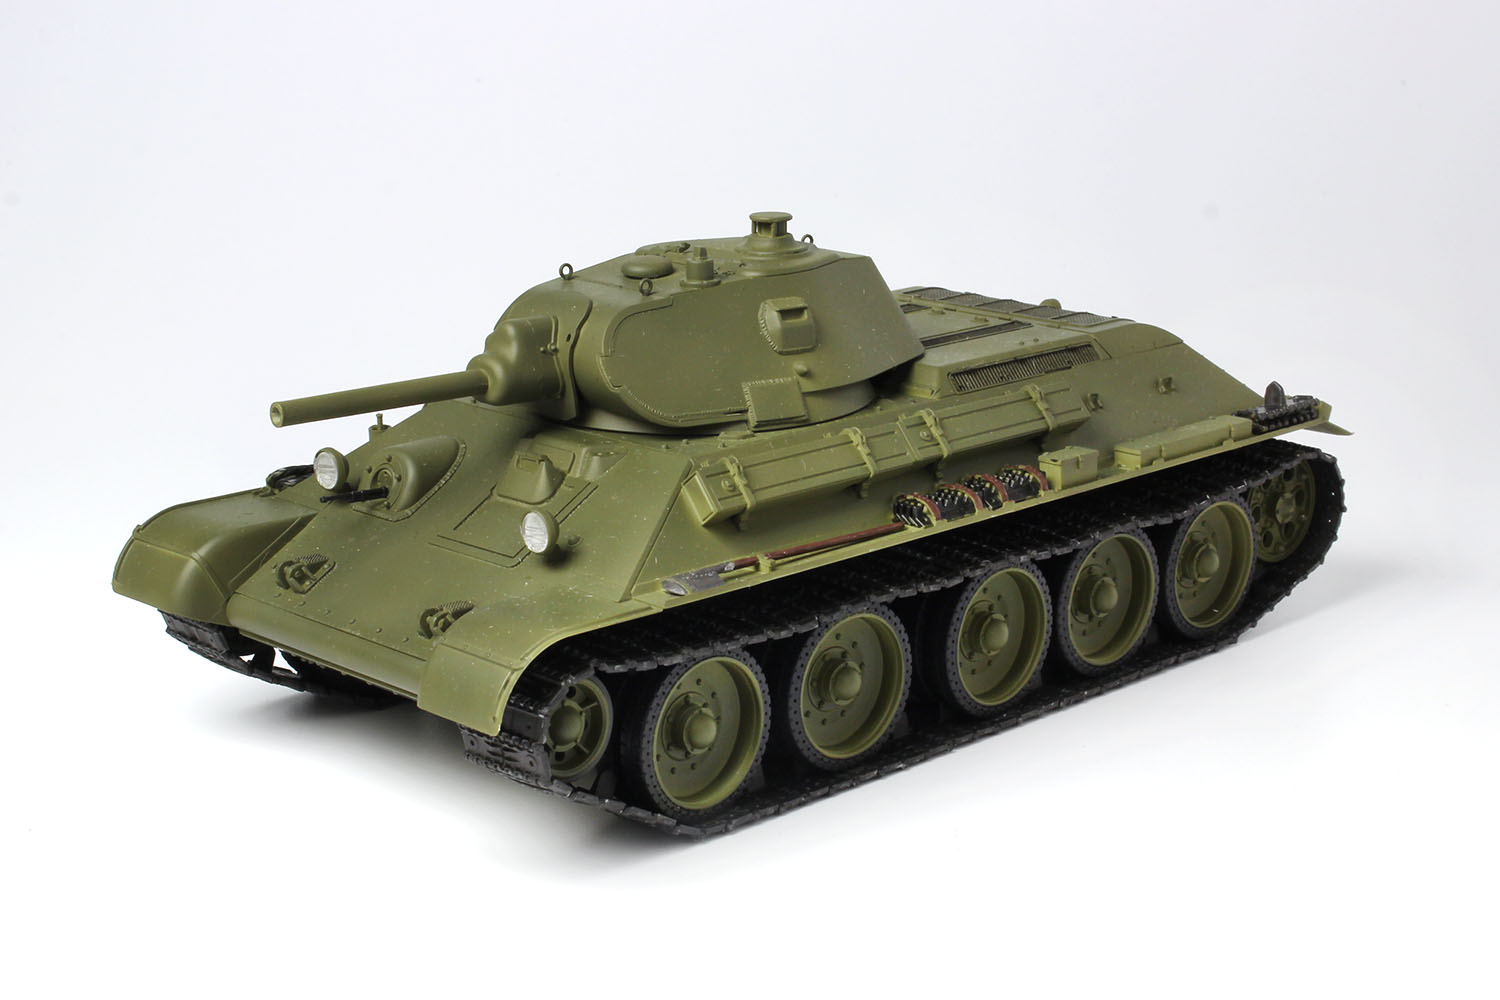 ドラゴンモデル[MD004]1/35 TANKS OF THE WORLD ソビエト中戦車 T-34